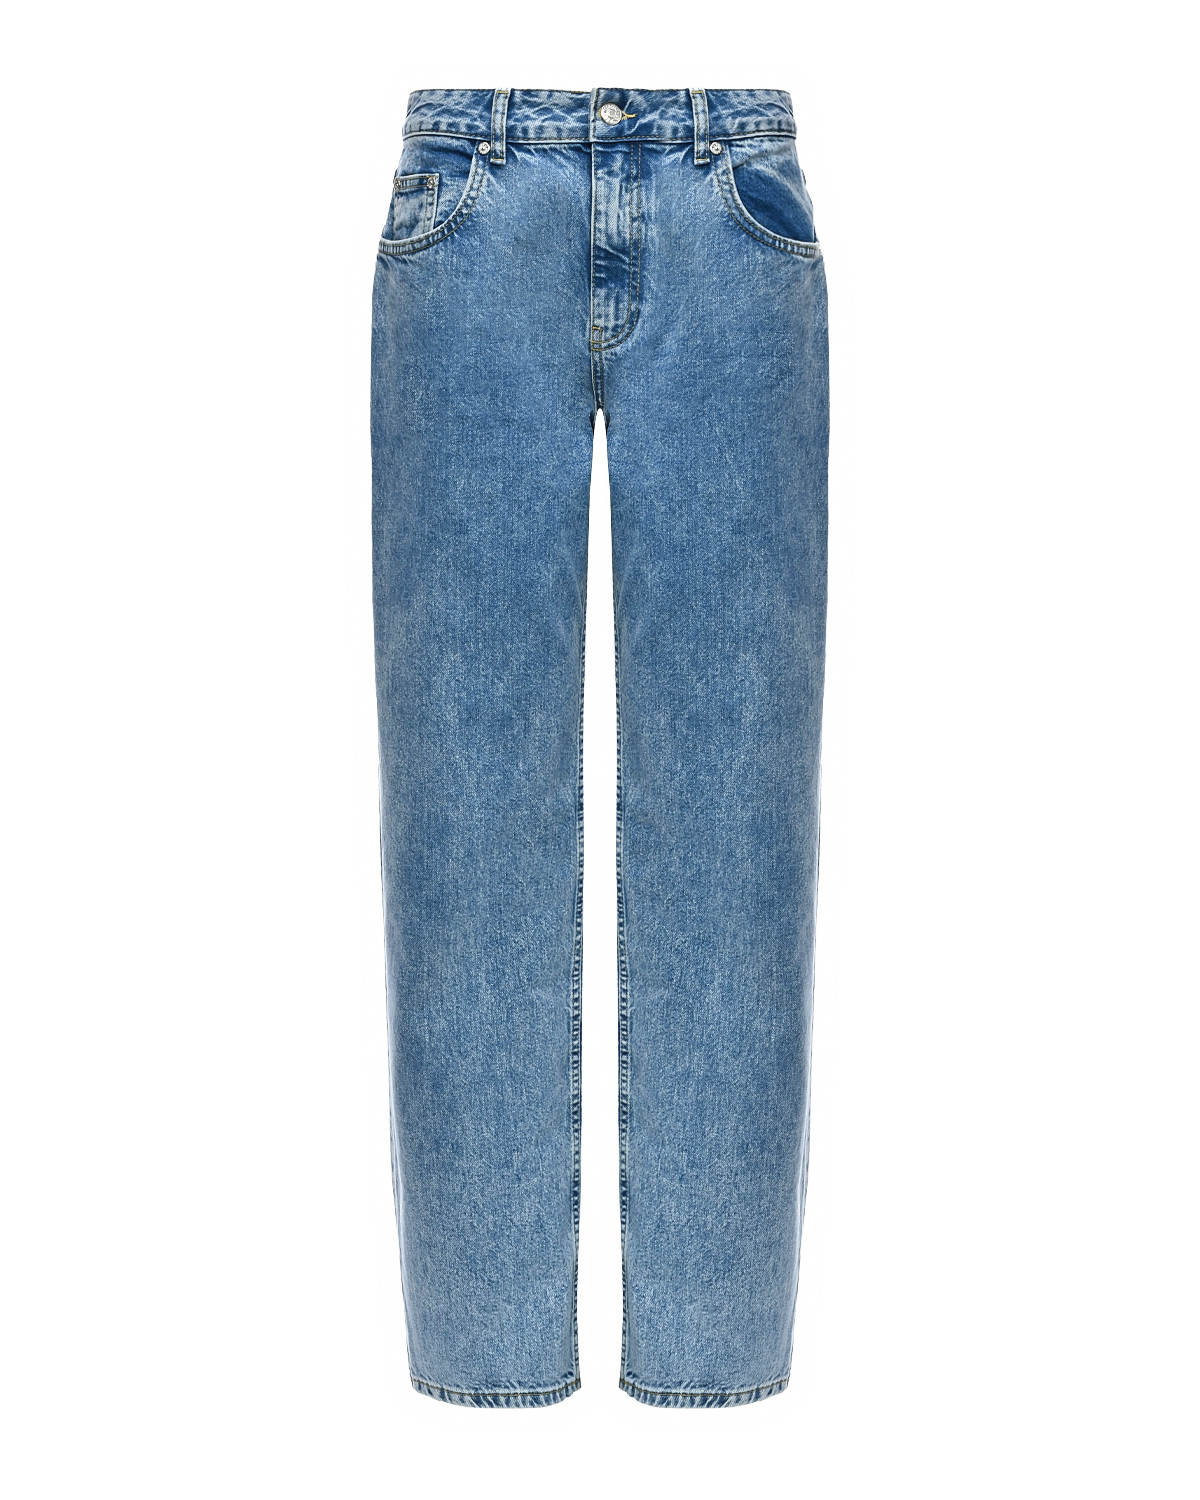 Зауженные голубые джинсы Mo5ch1no Jeans